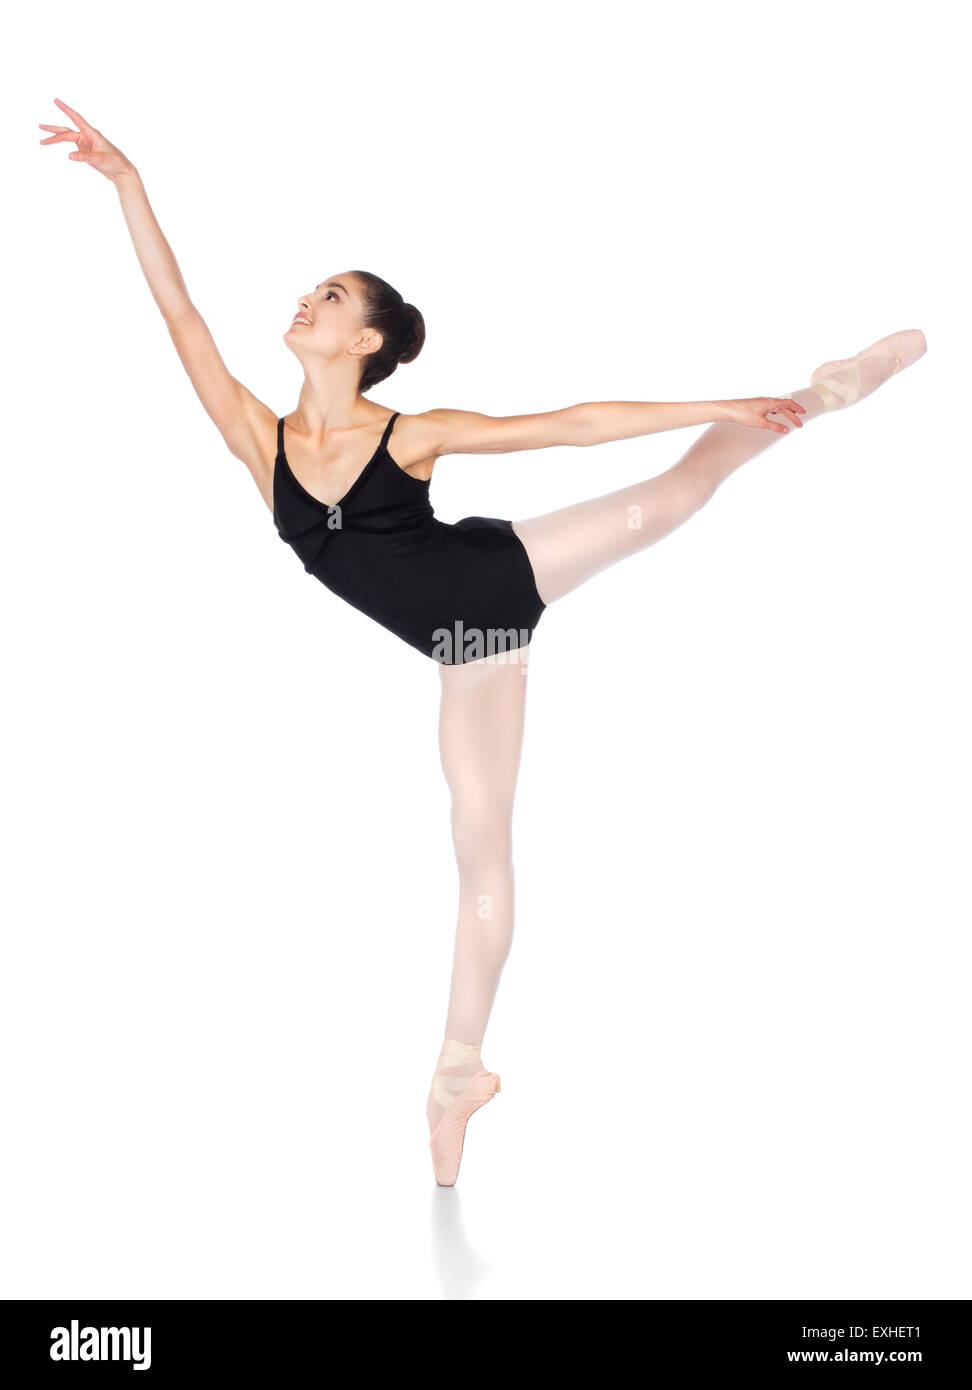 Schönen weiblichen Balletttänzer isoliert auf einem weißen Hintergrund. Ballerina trägt einen schwarzen Anzug, Spitzenschuhe und rosa Lager Stockfoto